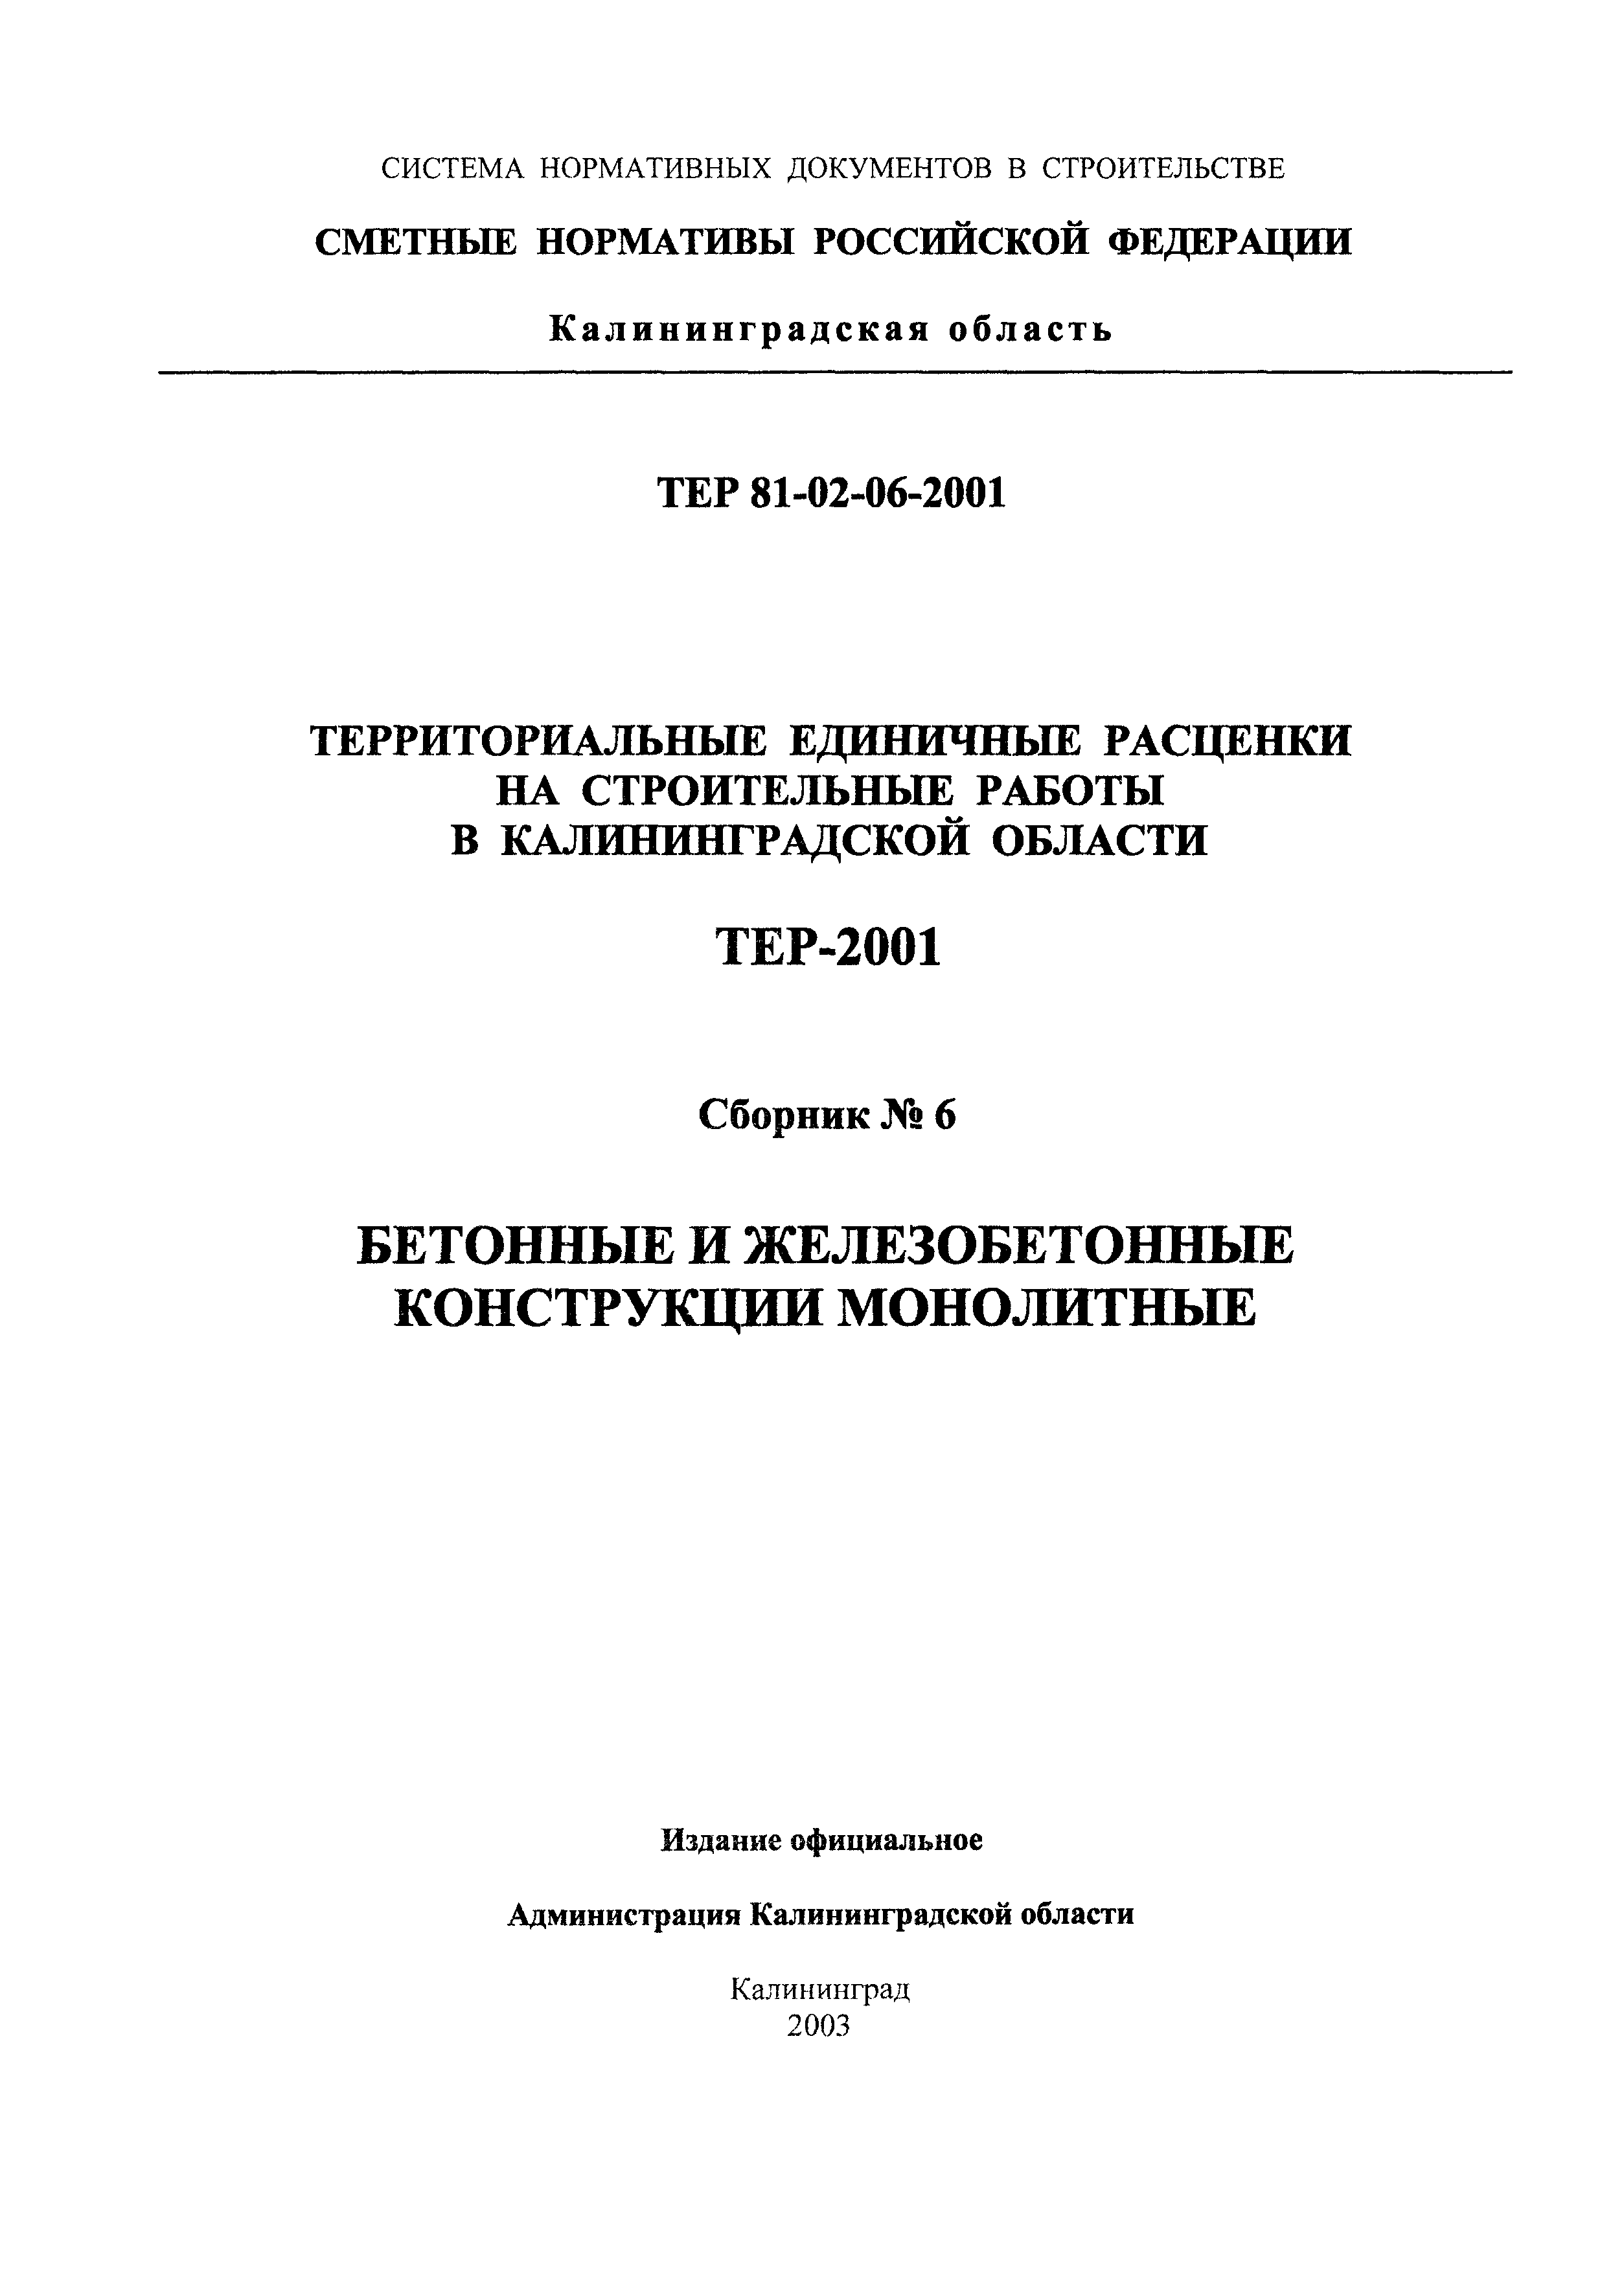 ТЕР Калининградская область 2001-06